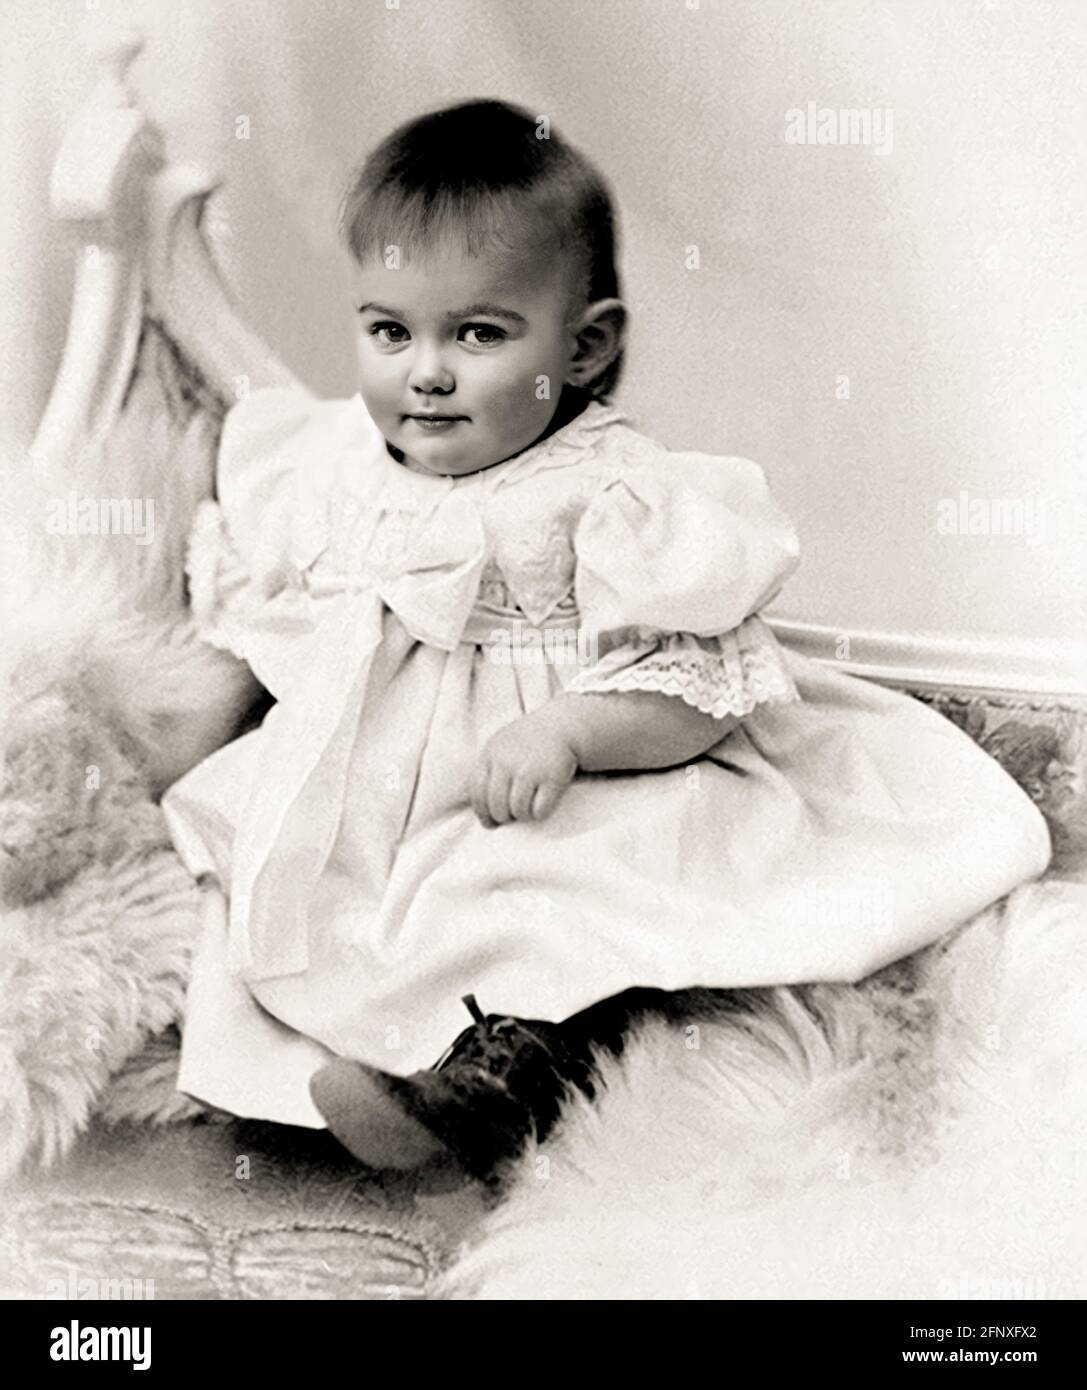 1901 c. , SCHWEDEN : die schwedische Dichterin , Schriftstellerin und Traslatorin KARIN MARIA BOYE ( 1900 - 1941 ), als ein kleines Mädchen war . Unbekannter Fotograf. - POET - POETA - POETESSA - POESIE - POESIA - LETTERATURA - LITERATUR - traduttore - traduttrice - SVEZIA - SCRITTORE - SCRITTRICE - bambina - bambini - bambino - KIND - Kinder - KINDHEIT - INFANZIA - personalità da giovane giovani - Persönlichkeiten der Persönlichkeit als jung war -- - ARCHIVIO GBB Stockfoto